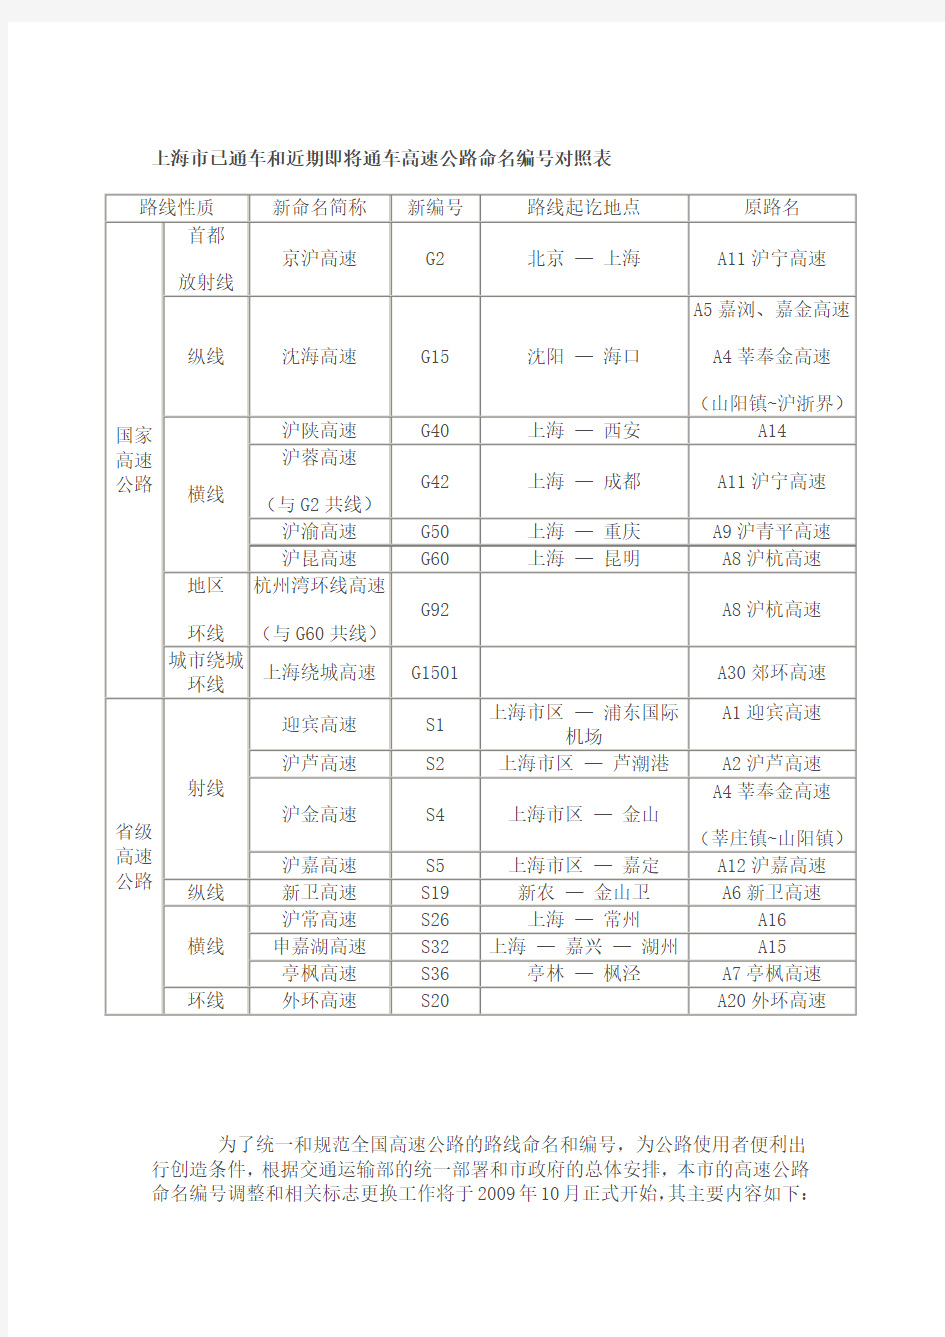 全国高速公路编号对照表(附：上海市高速公路对应表)